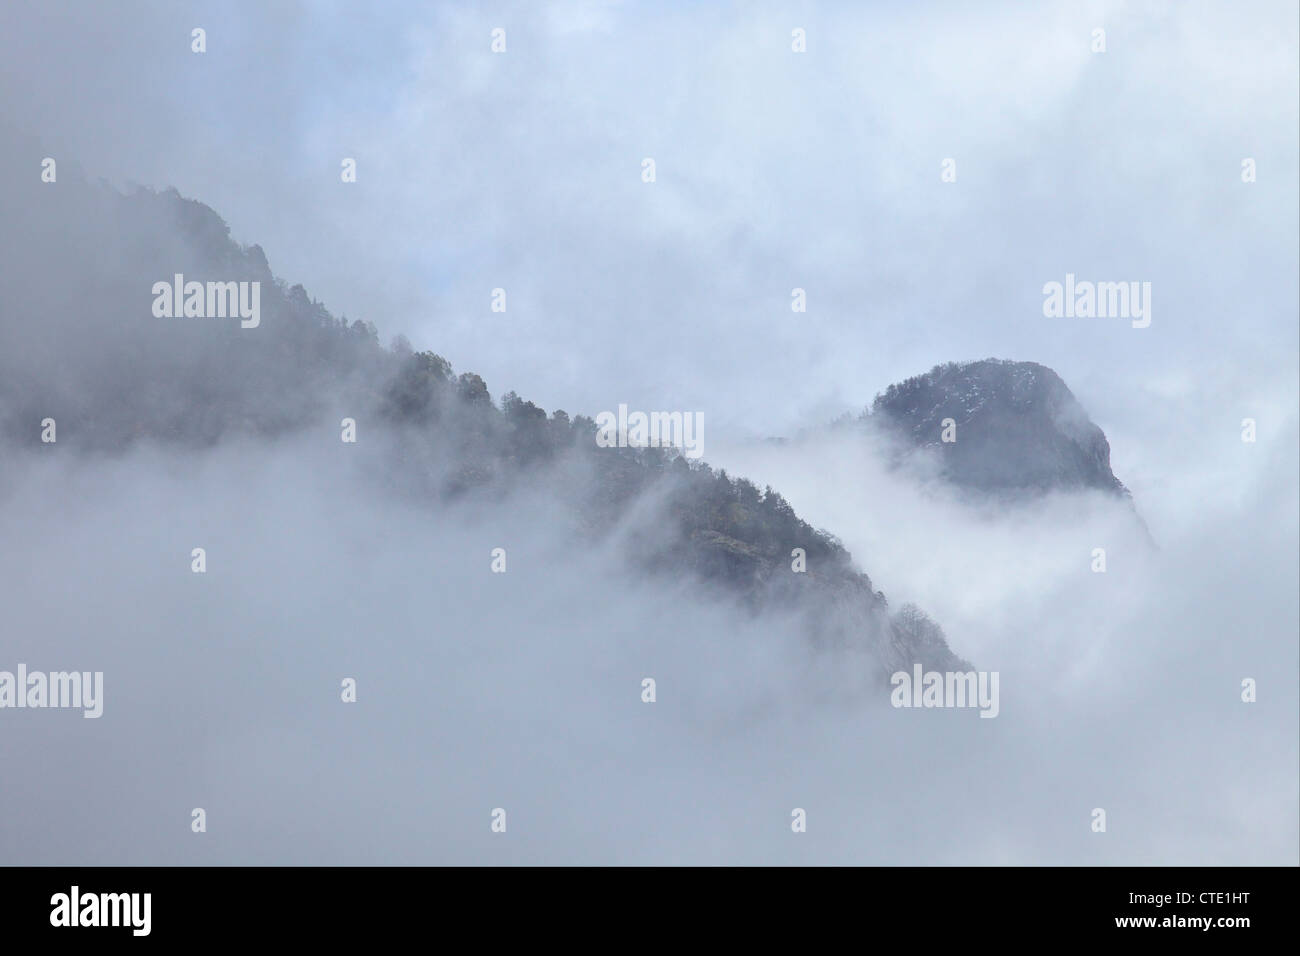 Forest e scogliere nella nebbia, Engadina, alpi svizzere, Svizzera Europa Foto Stock